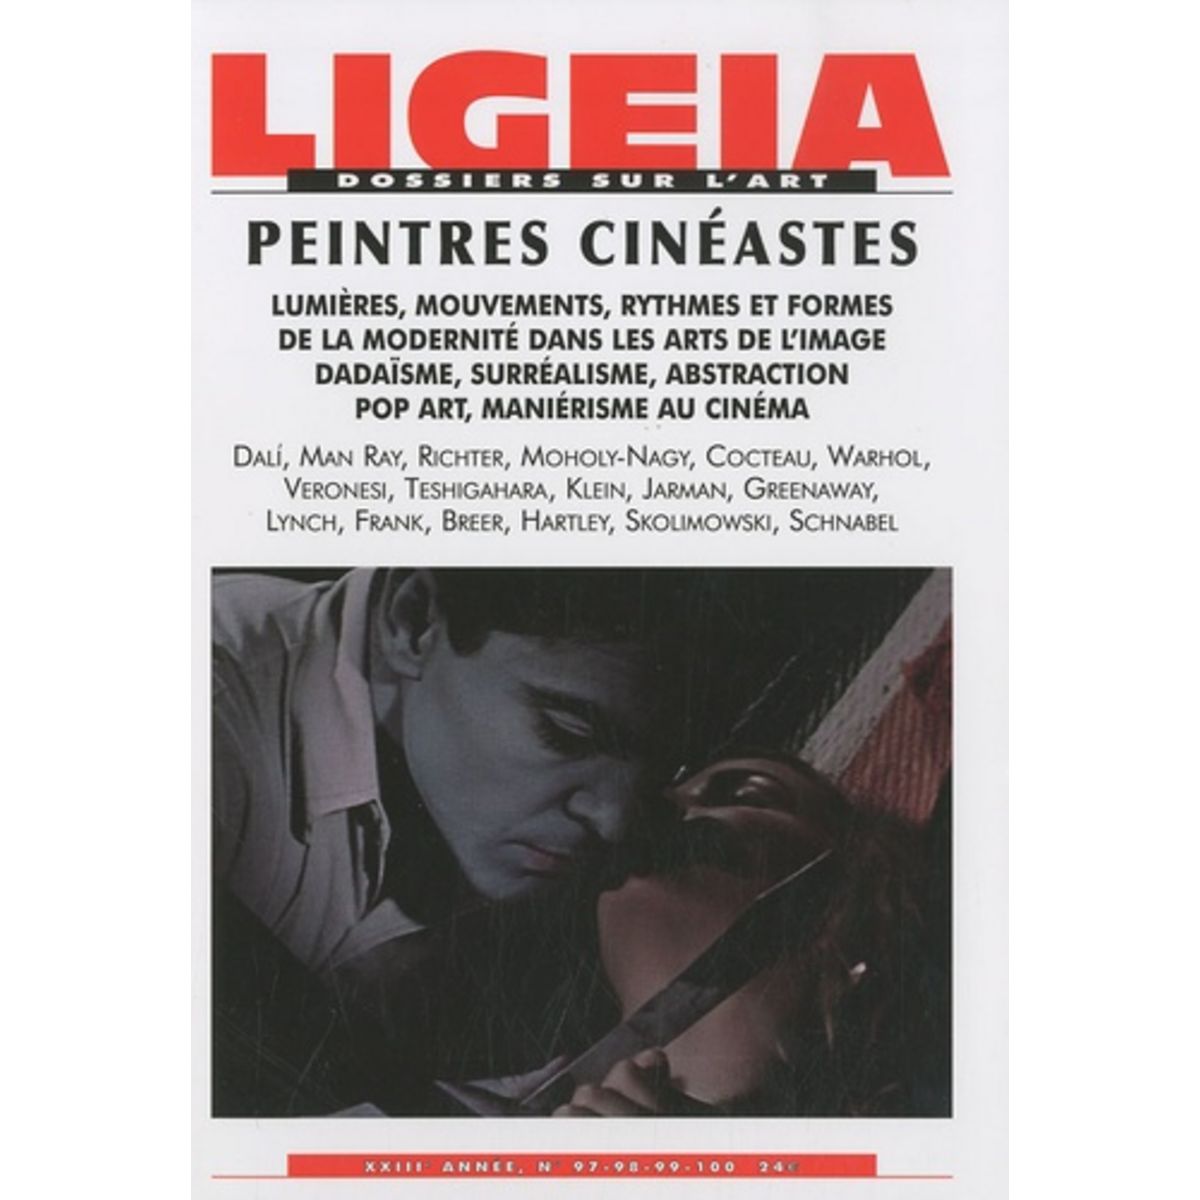  LIGEIA N° 97-98-99-100, JANVIER-JUIN 2010 : PEINTRES CINEASTES, Thivat Patricia-Laure